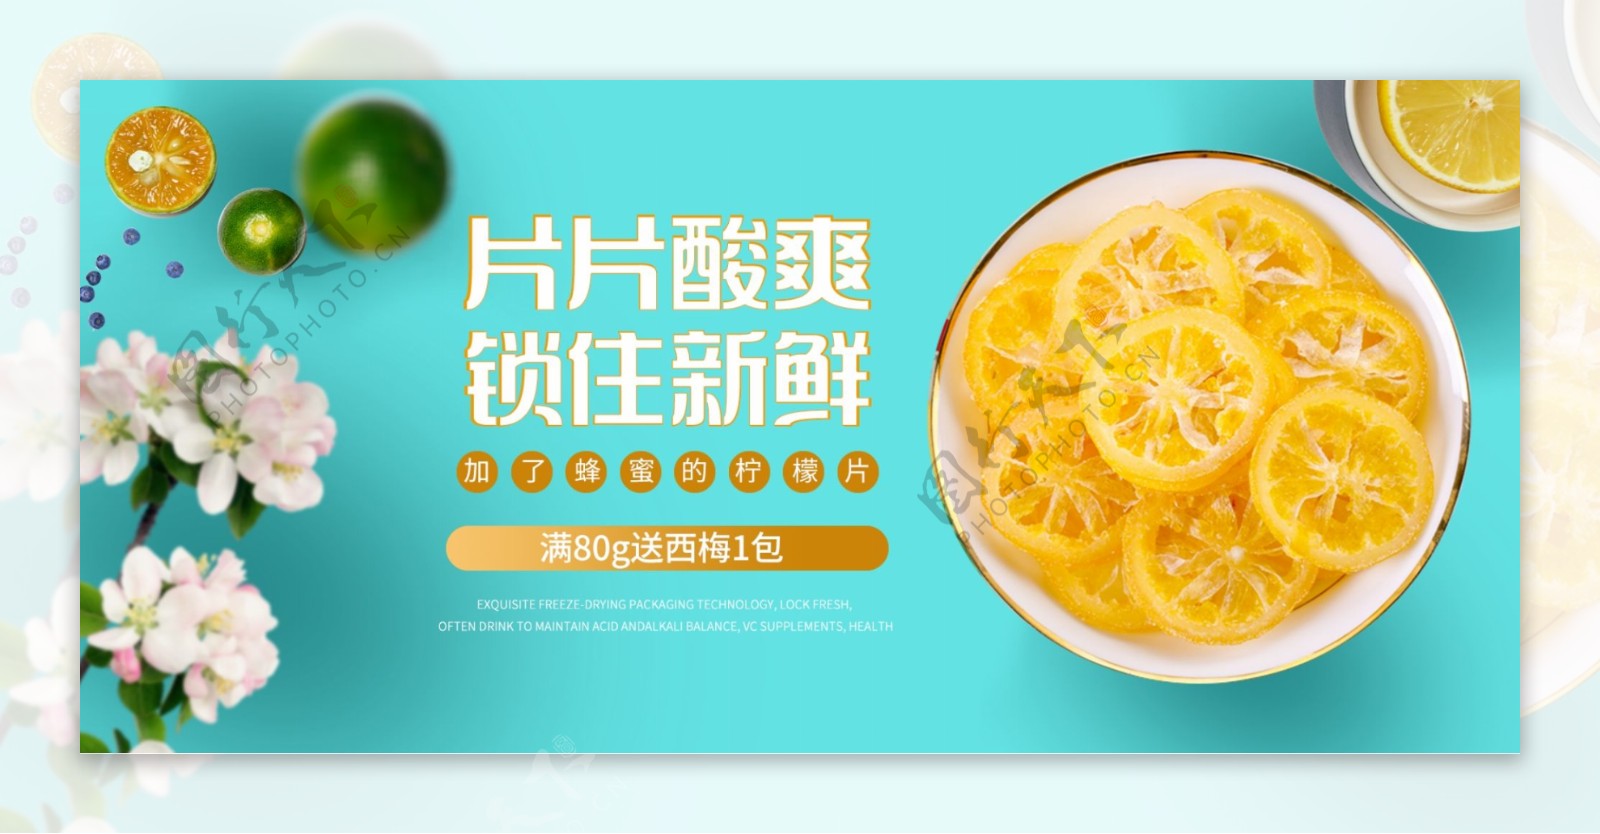 清新简约柠檬片食品茶饮全屏海报